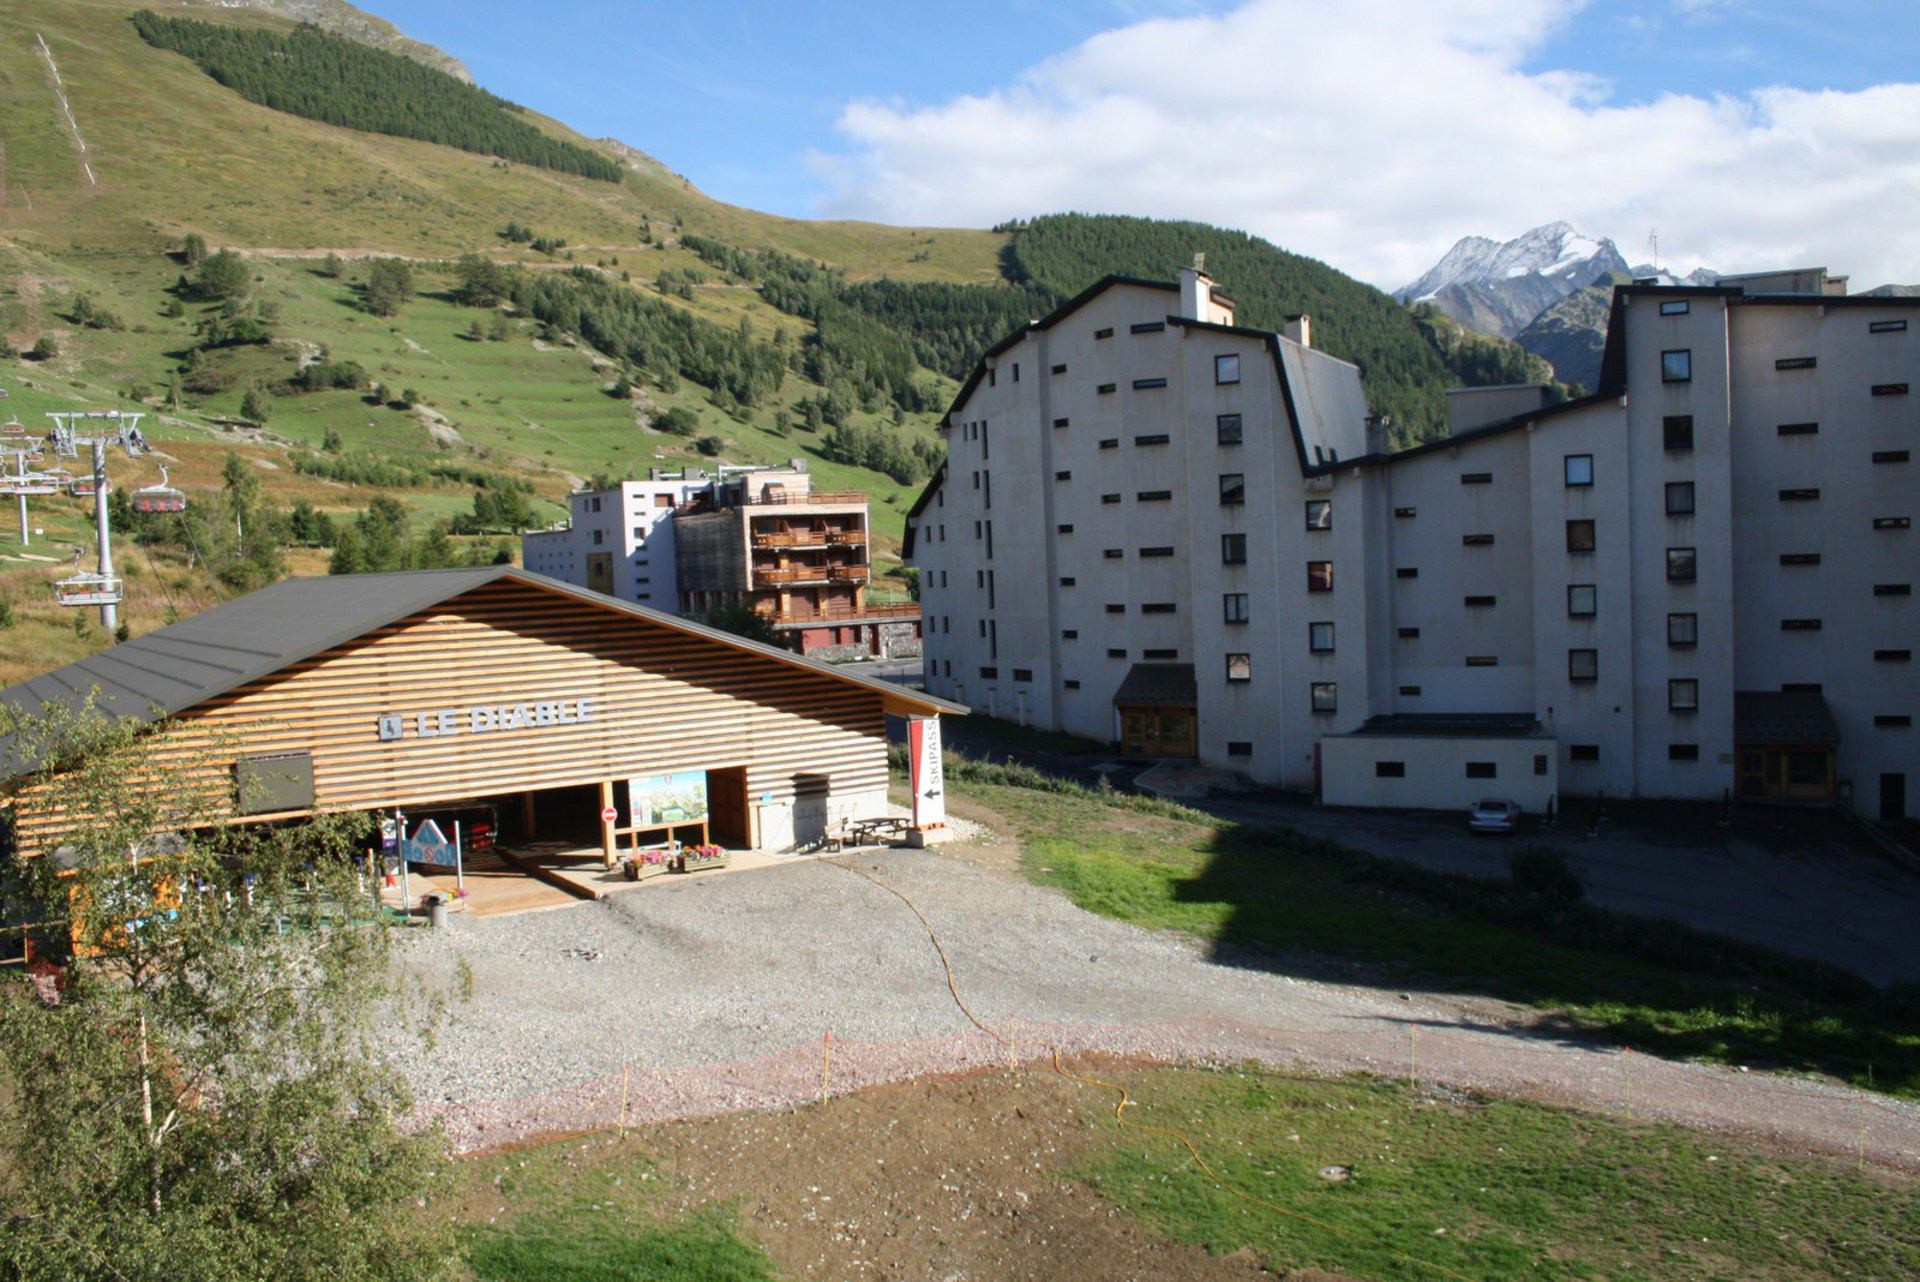 Appartement Lauvitel - C5 - Appt duplex pied de piste - 8 pers - Les Deux Alpes Venosc